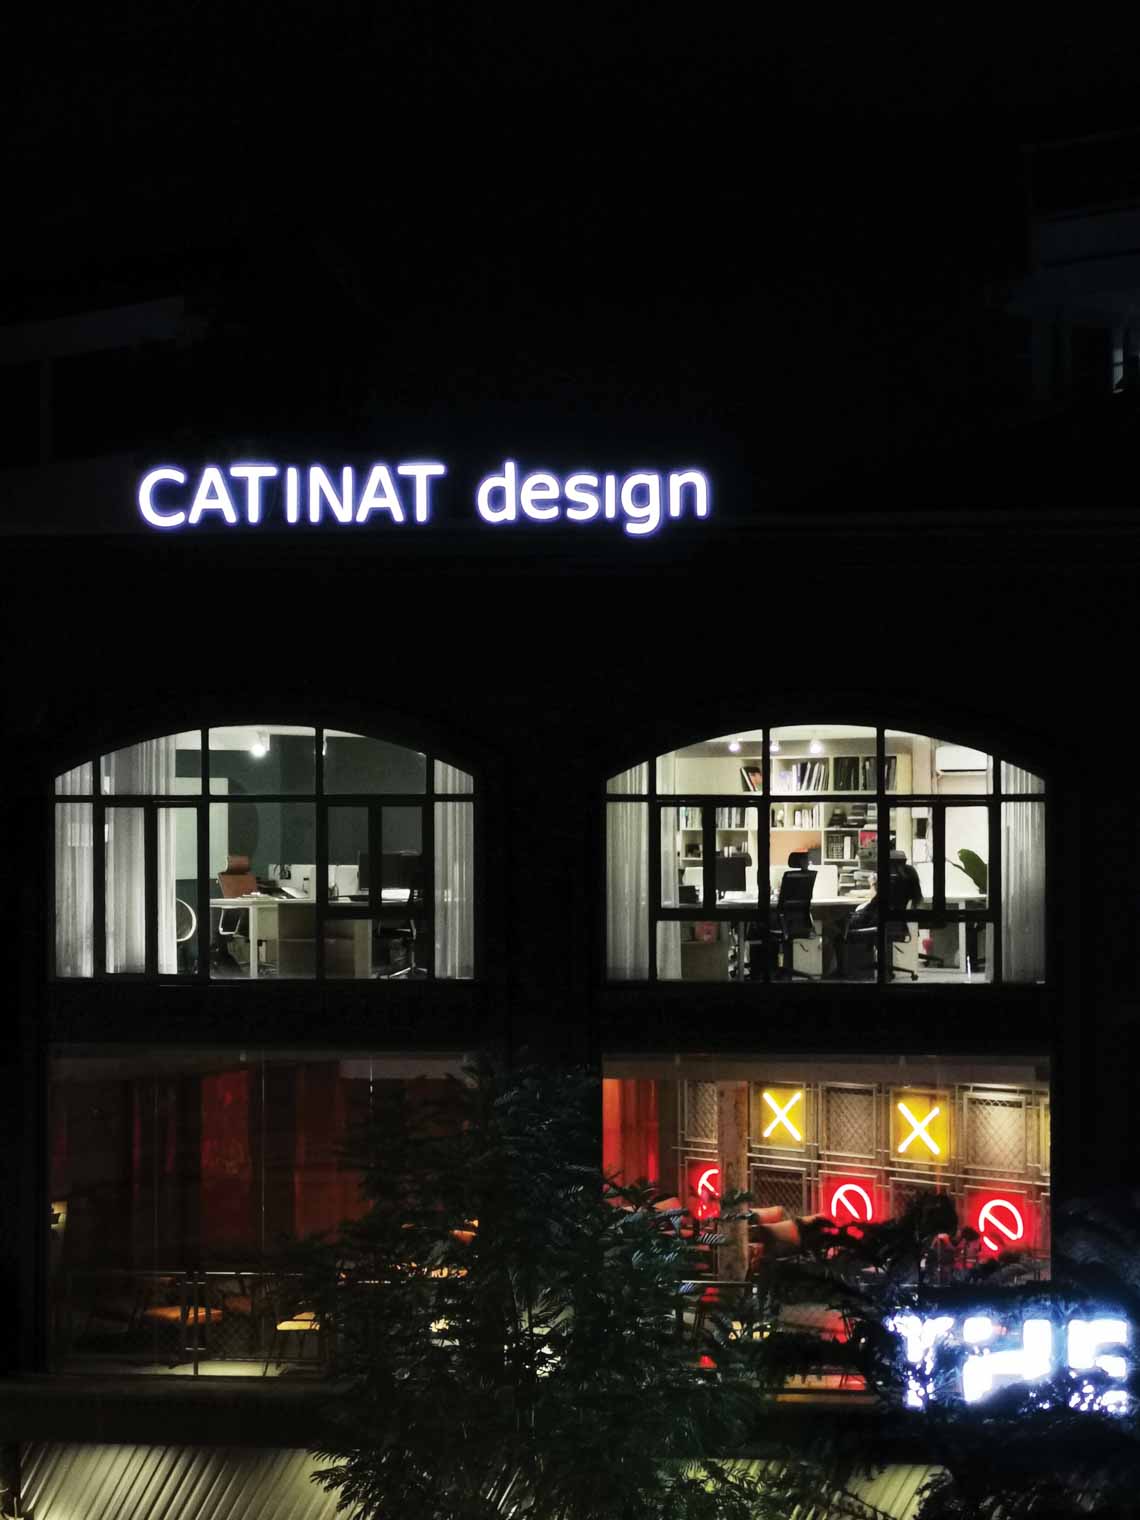 Phương án cải tạo tiết kiệm ở văn phòng Catinat design - 1